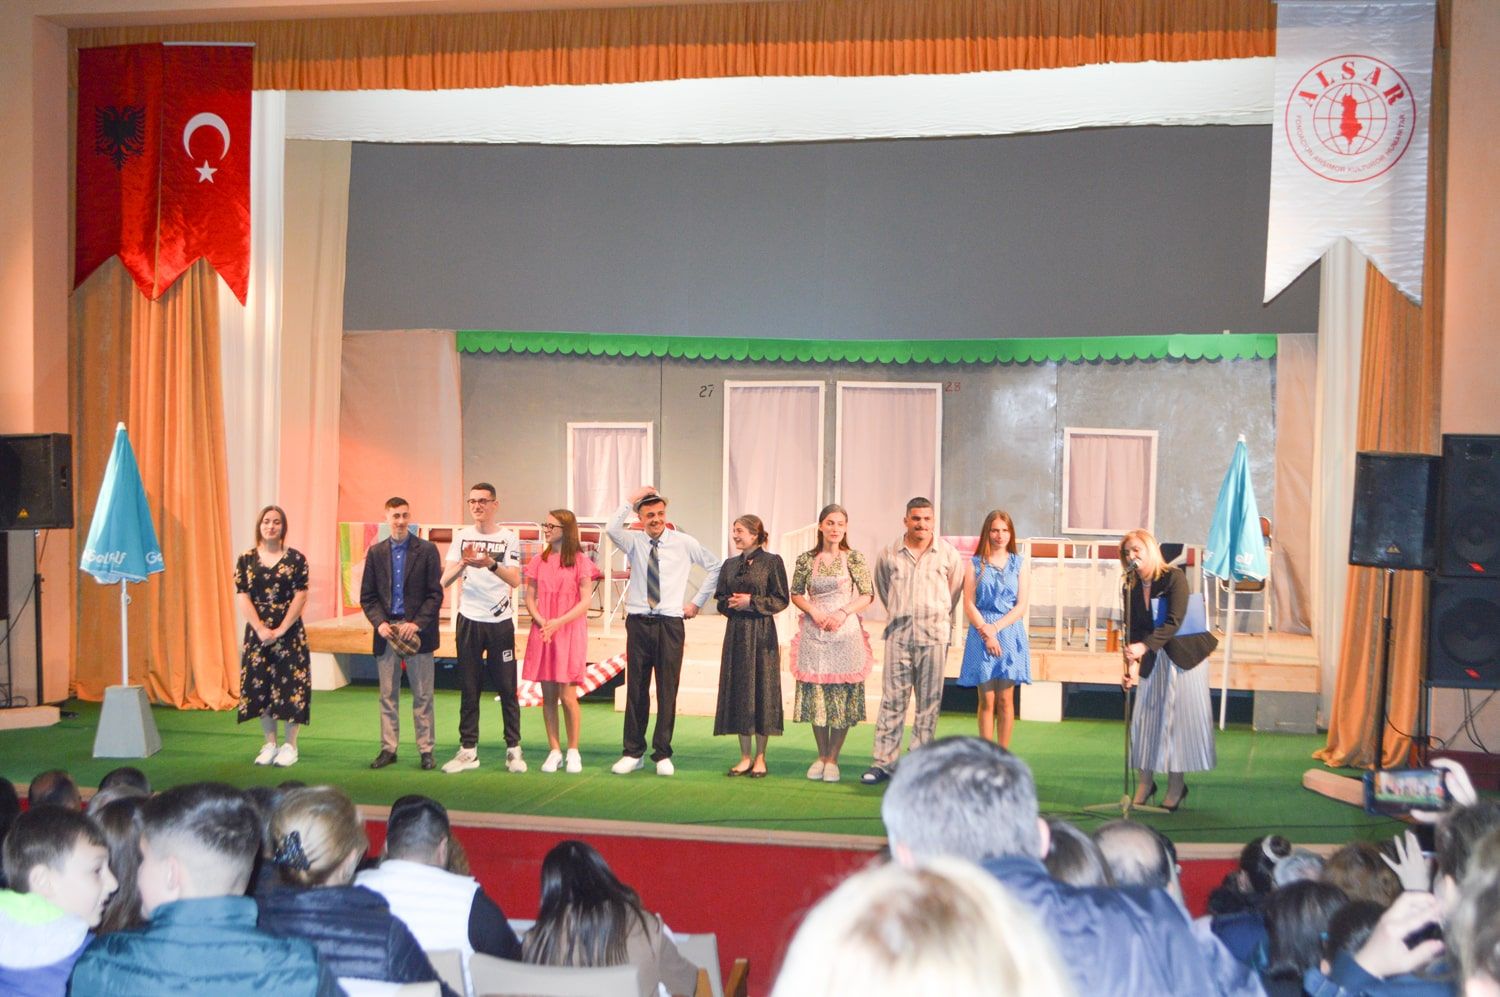 Gjimnazistët e shkollës “Havzi Nela” në Kukës vënë në skenë komedinë “Shi në plazh” me mbështetjen financiare të Fondacionit ALSAR